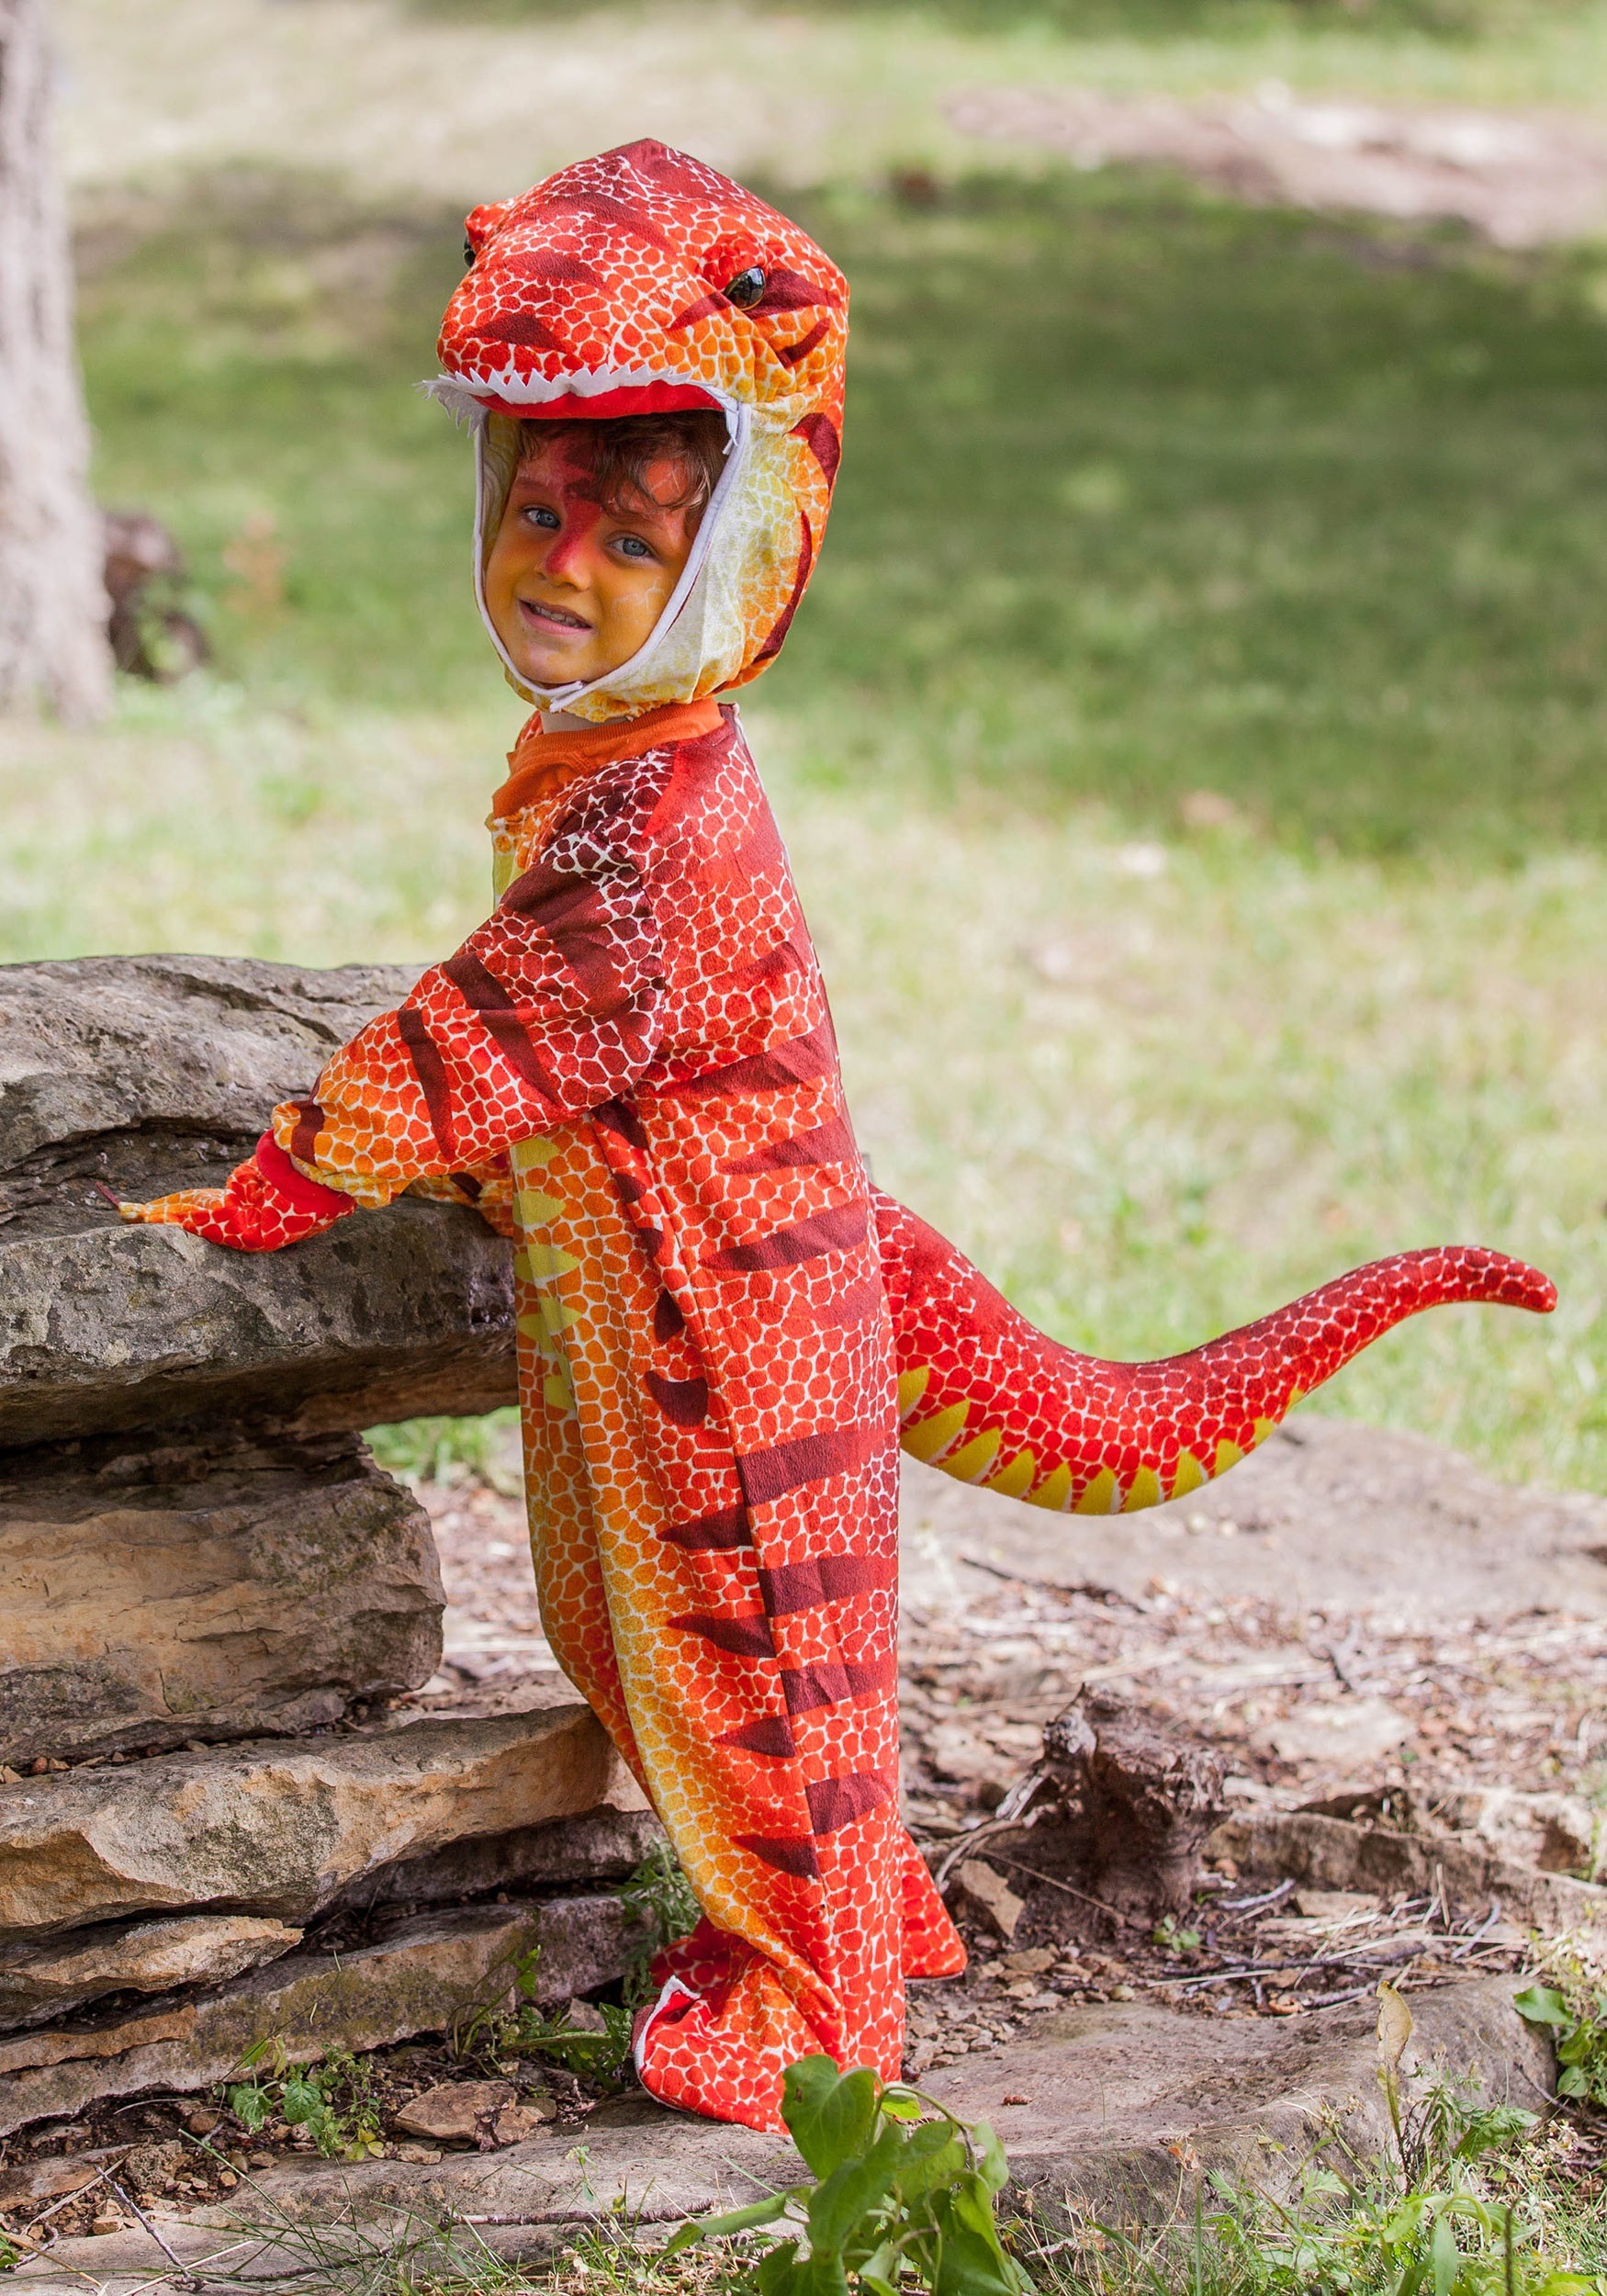 Child Rusty T-Rex Dinosaur Costume